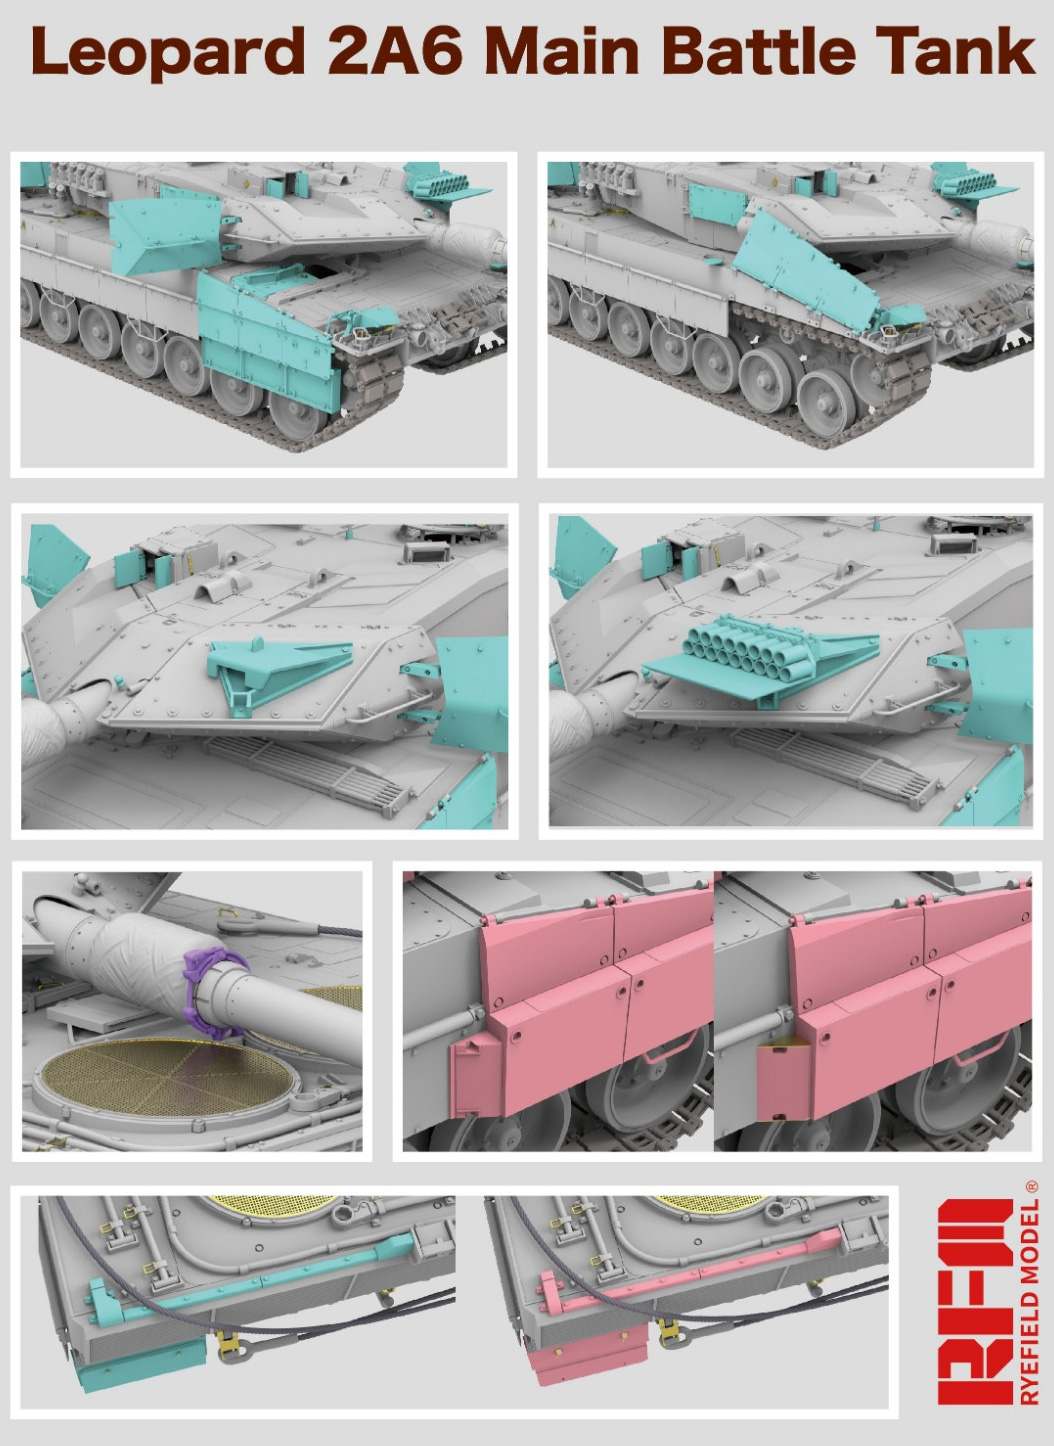 レオパルト 2A6 主力戦車 w/可動式履帯 プラモデル (ライ フィールド モデル 1/35 Military Miniature Series No.5065) 商品画像_2